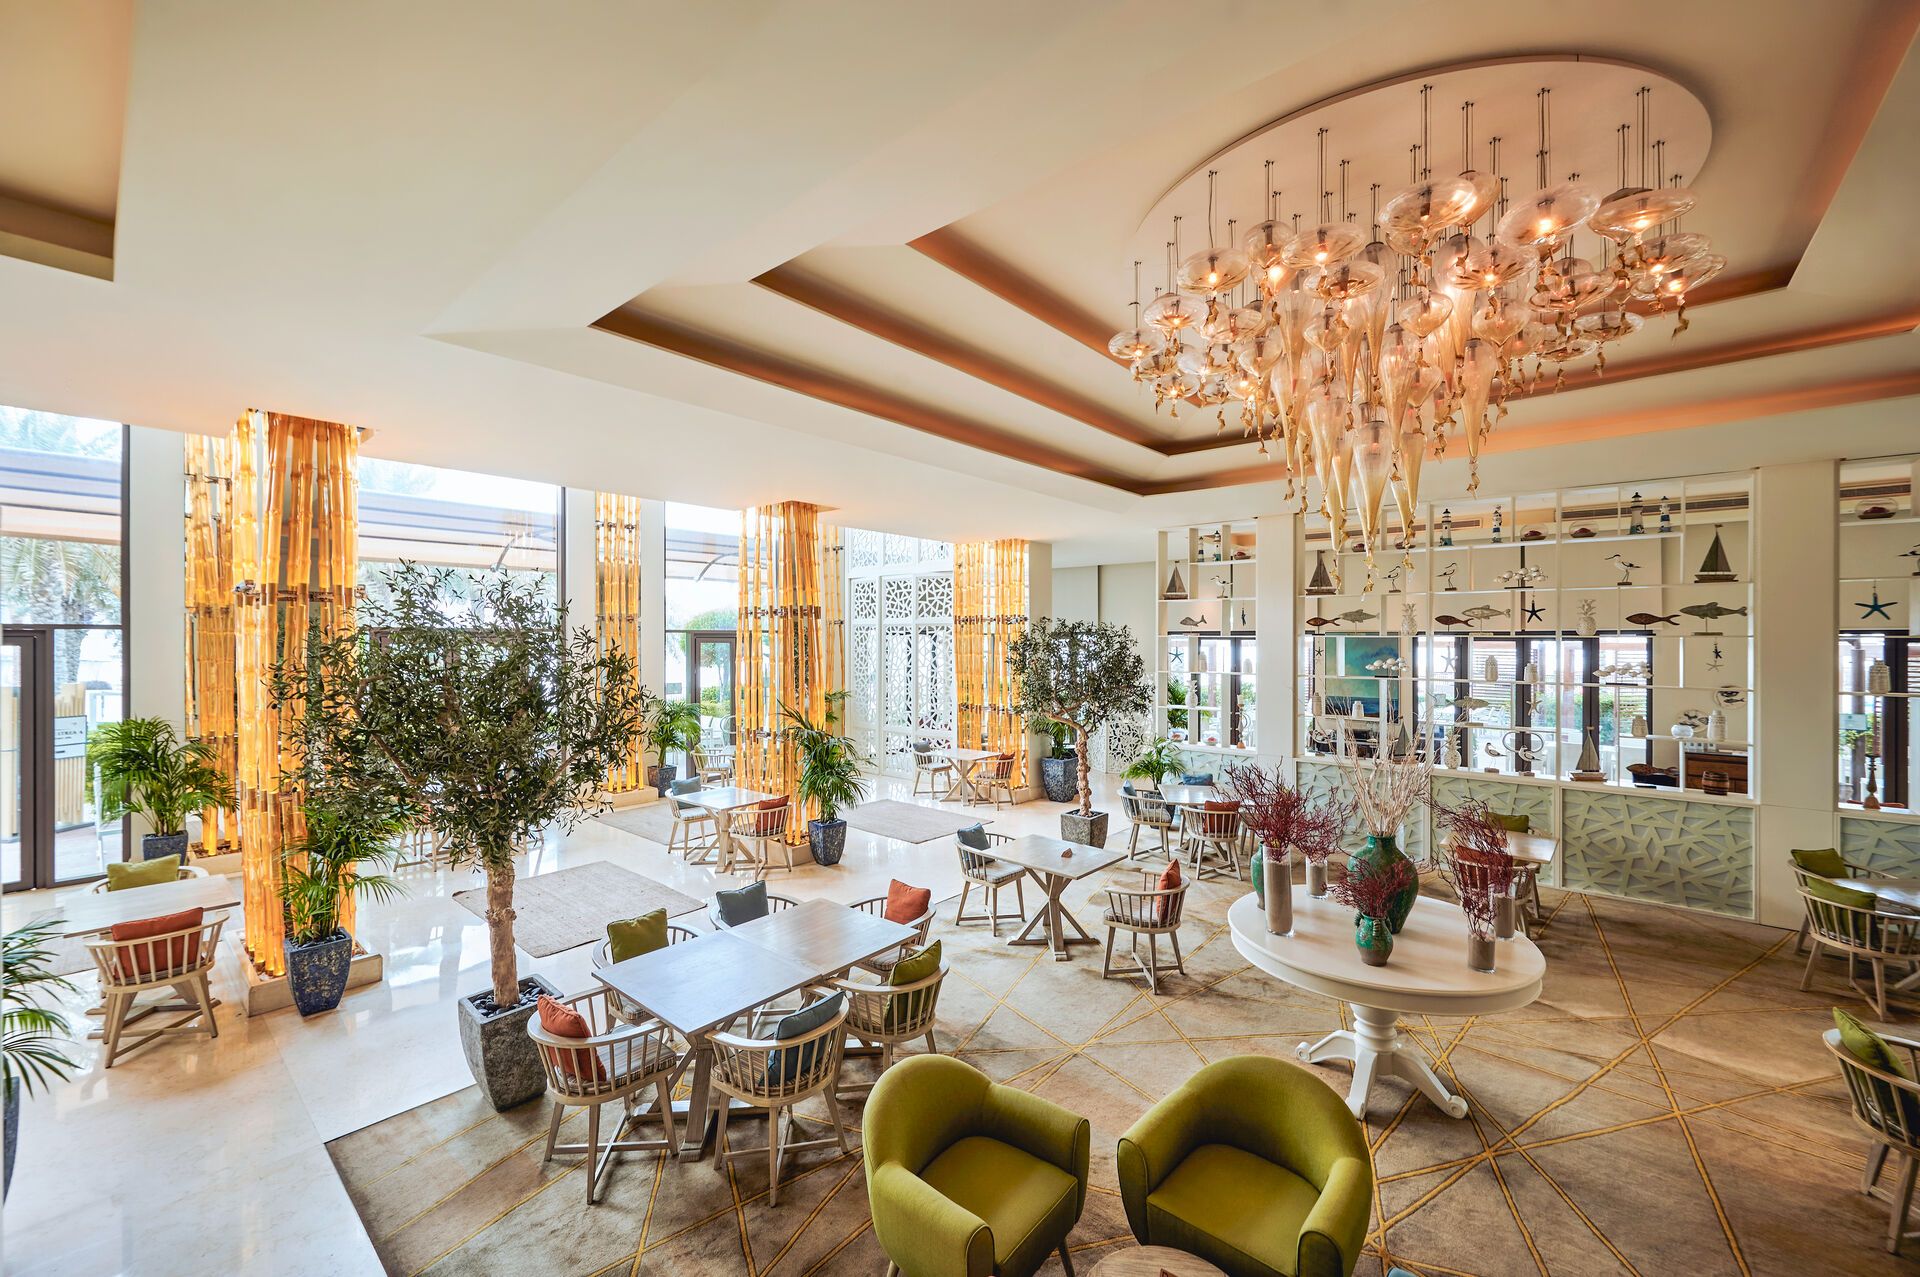 Emirats Arabes Unis - Dubaï - Hôtel Fairmont The Palm 5*